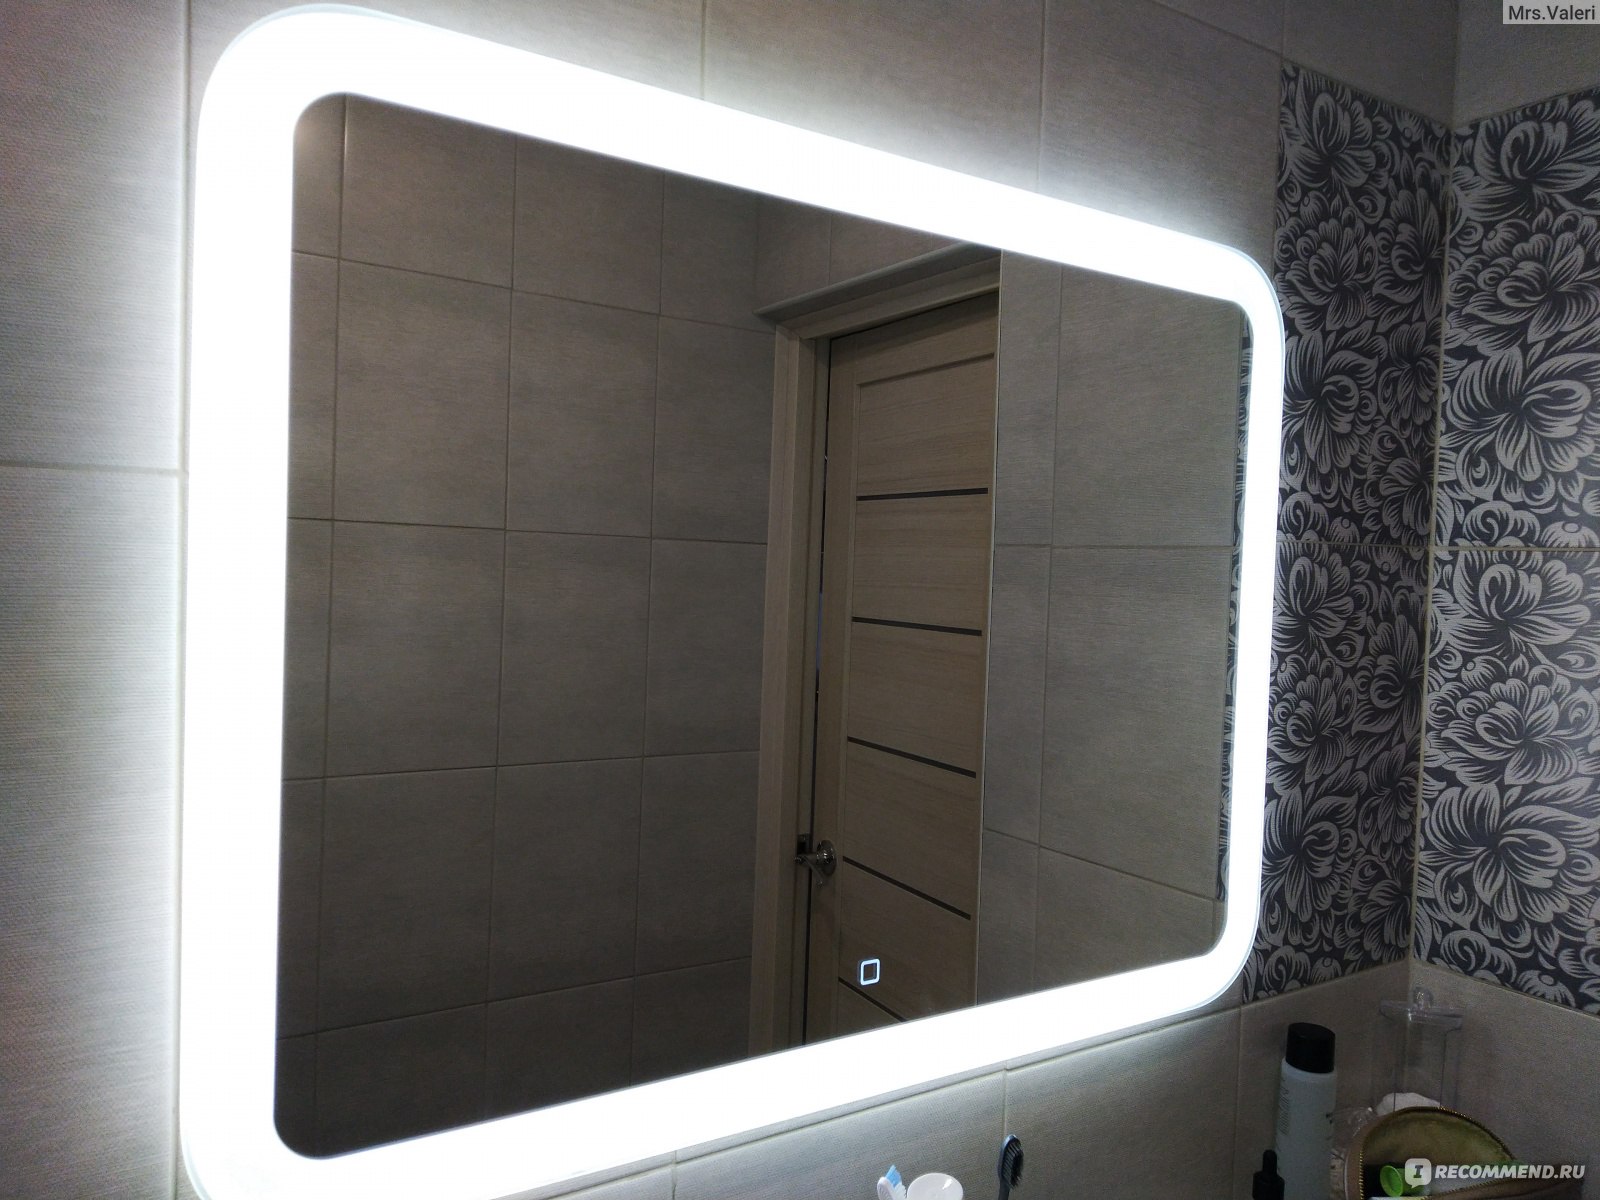 Леруа мерлен зеркало с подсветкой в ванную. Зеркало с подсветкой Леруа Мерлен. Зеркало с подсветкой в ванную Леруа Мерлен. Зеркало в ванну в Леруа Мерлен. Зеркало лед Леруа Мерлен.